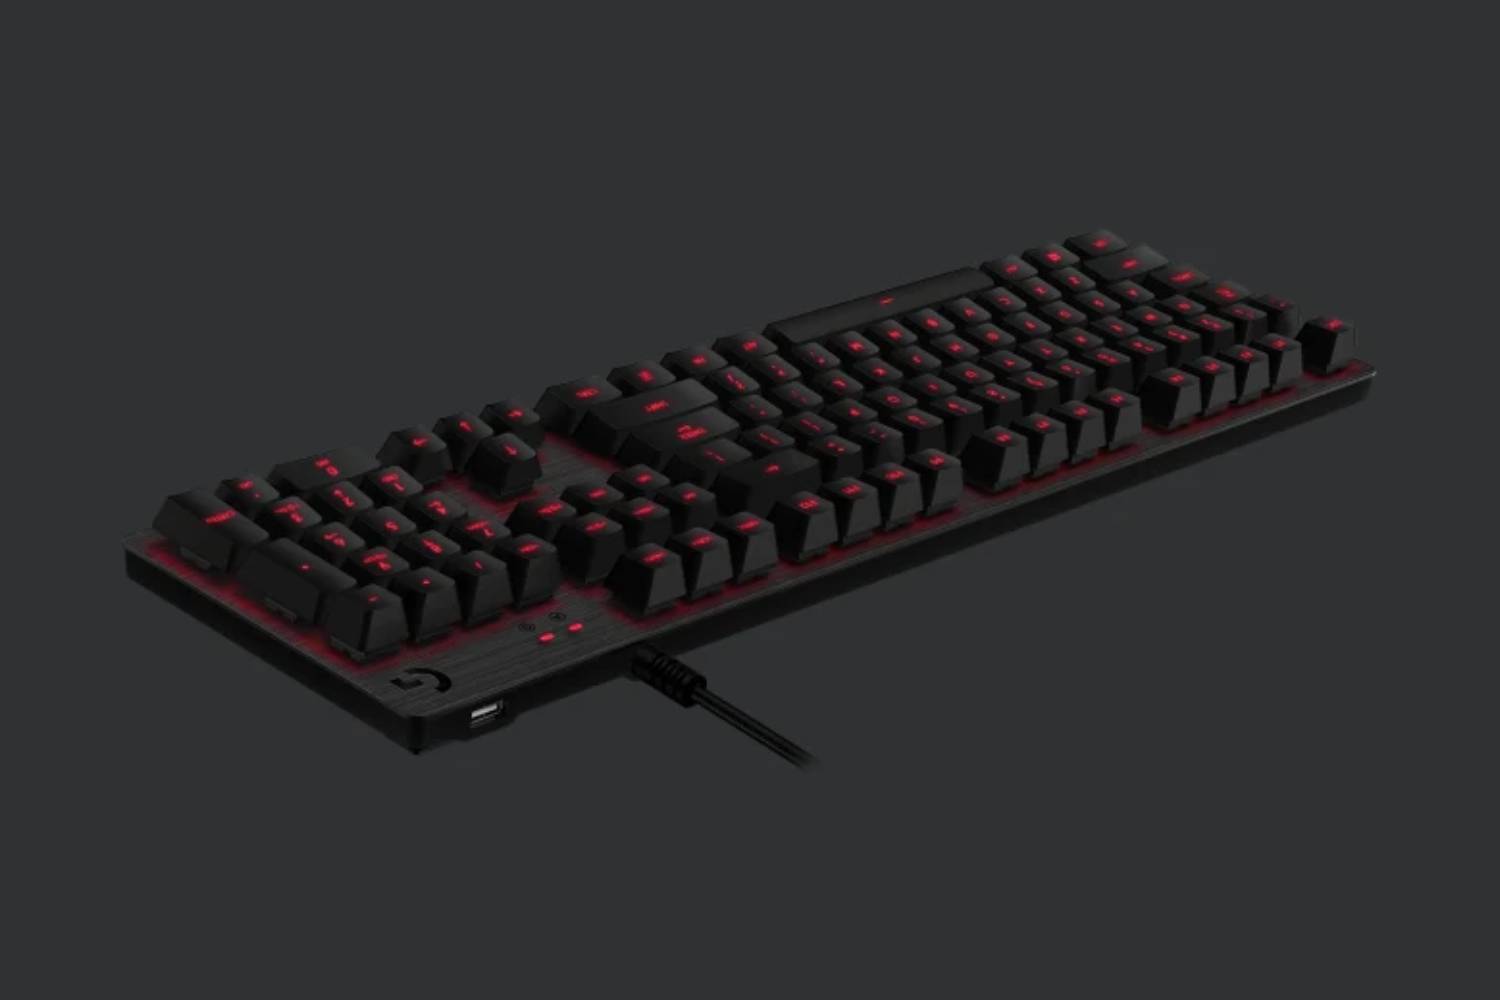 Logitech G413 Carbon Mechanical Gaming Keyboard